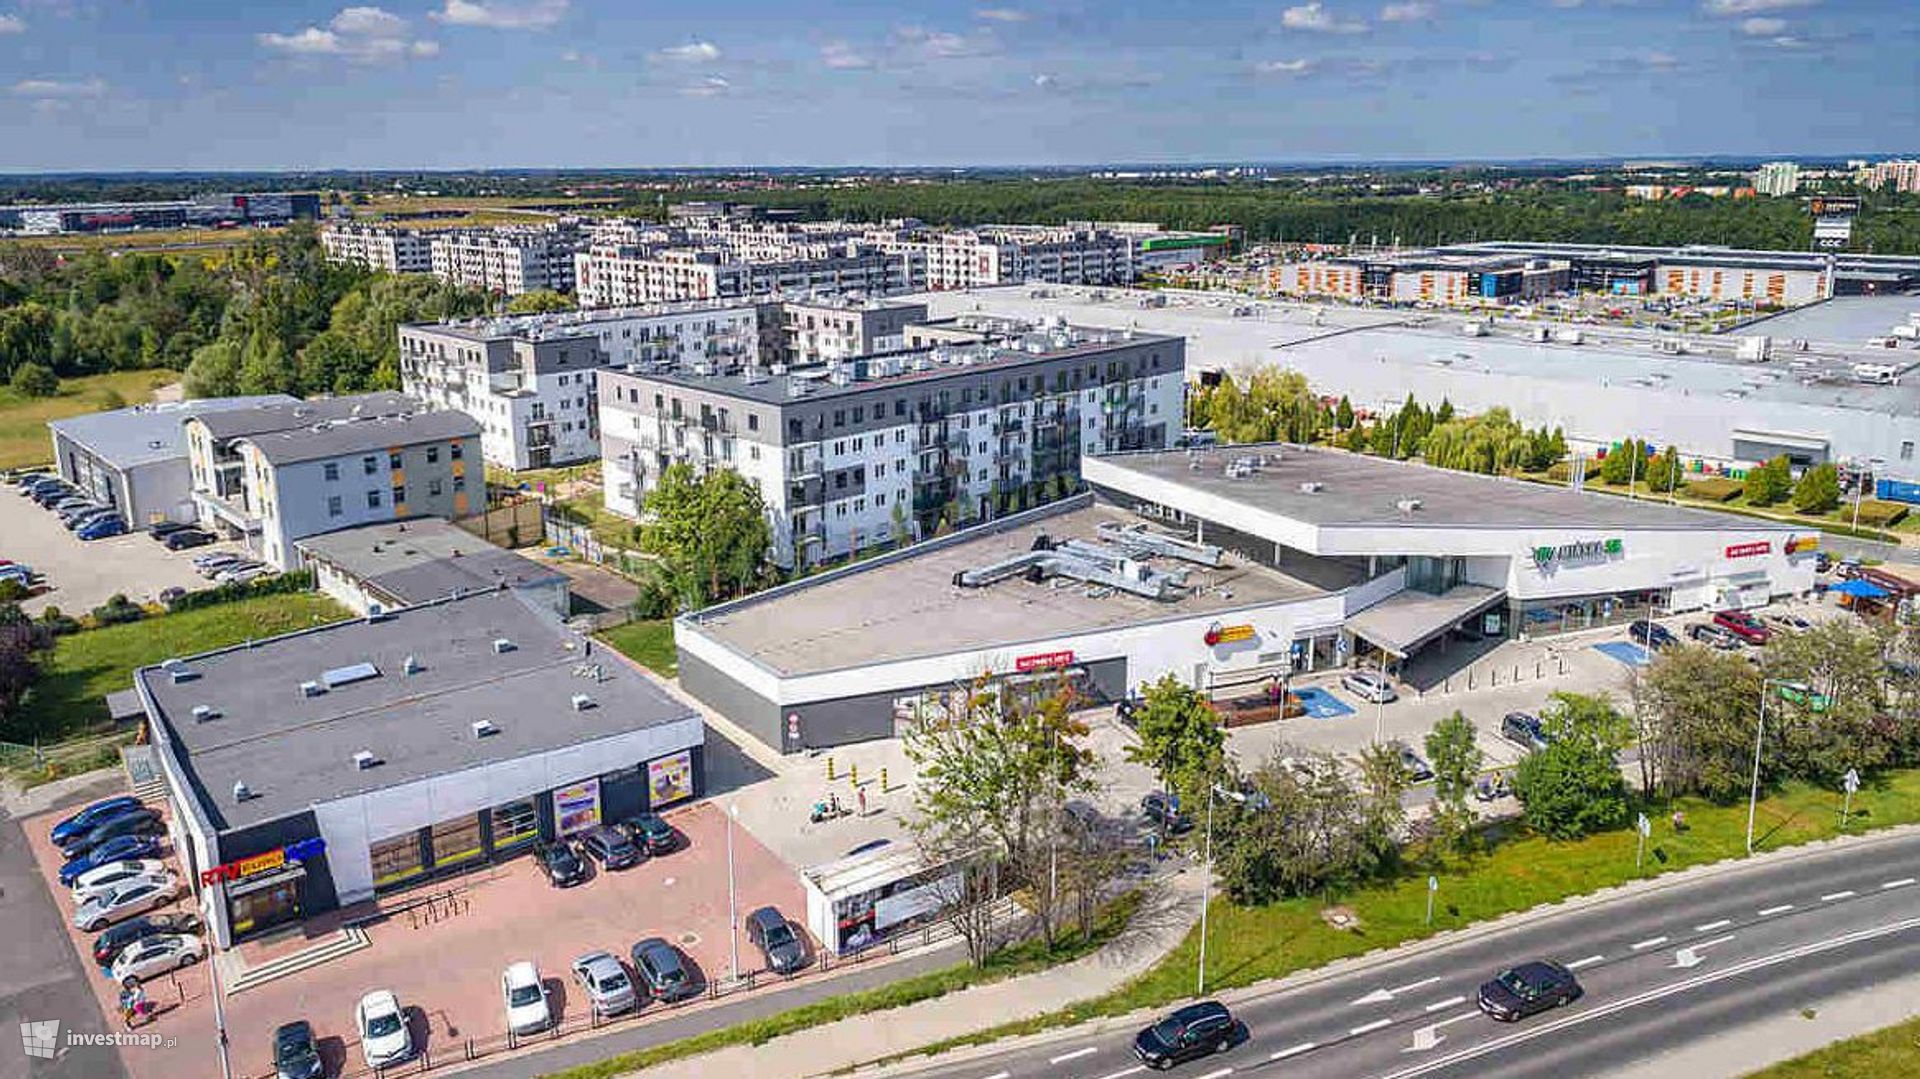 Kolejne wrocławskie centrum handlowe przechodzi modernizację. Jak się zmieni?